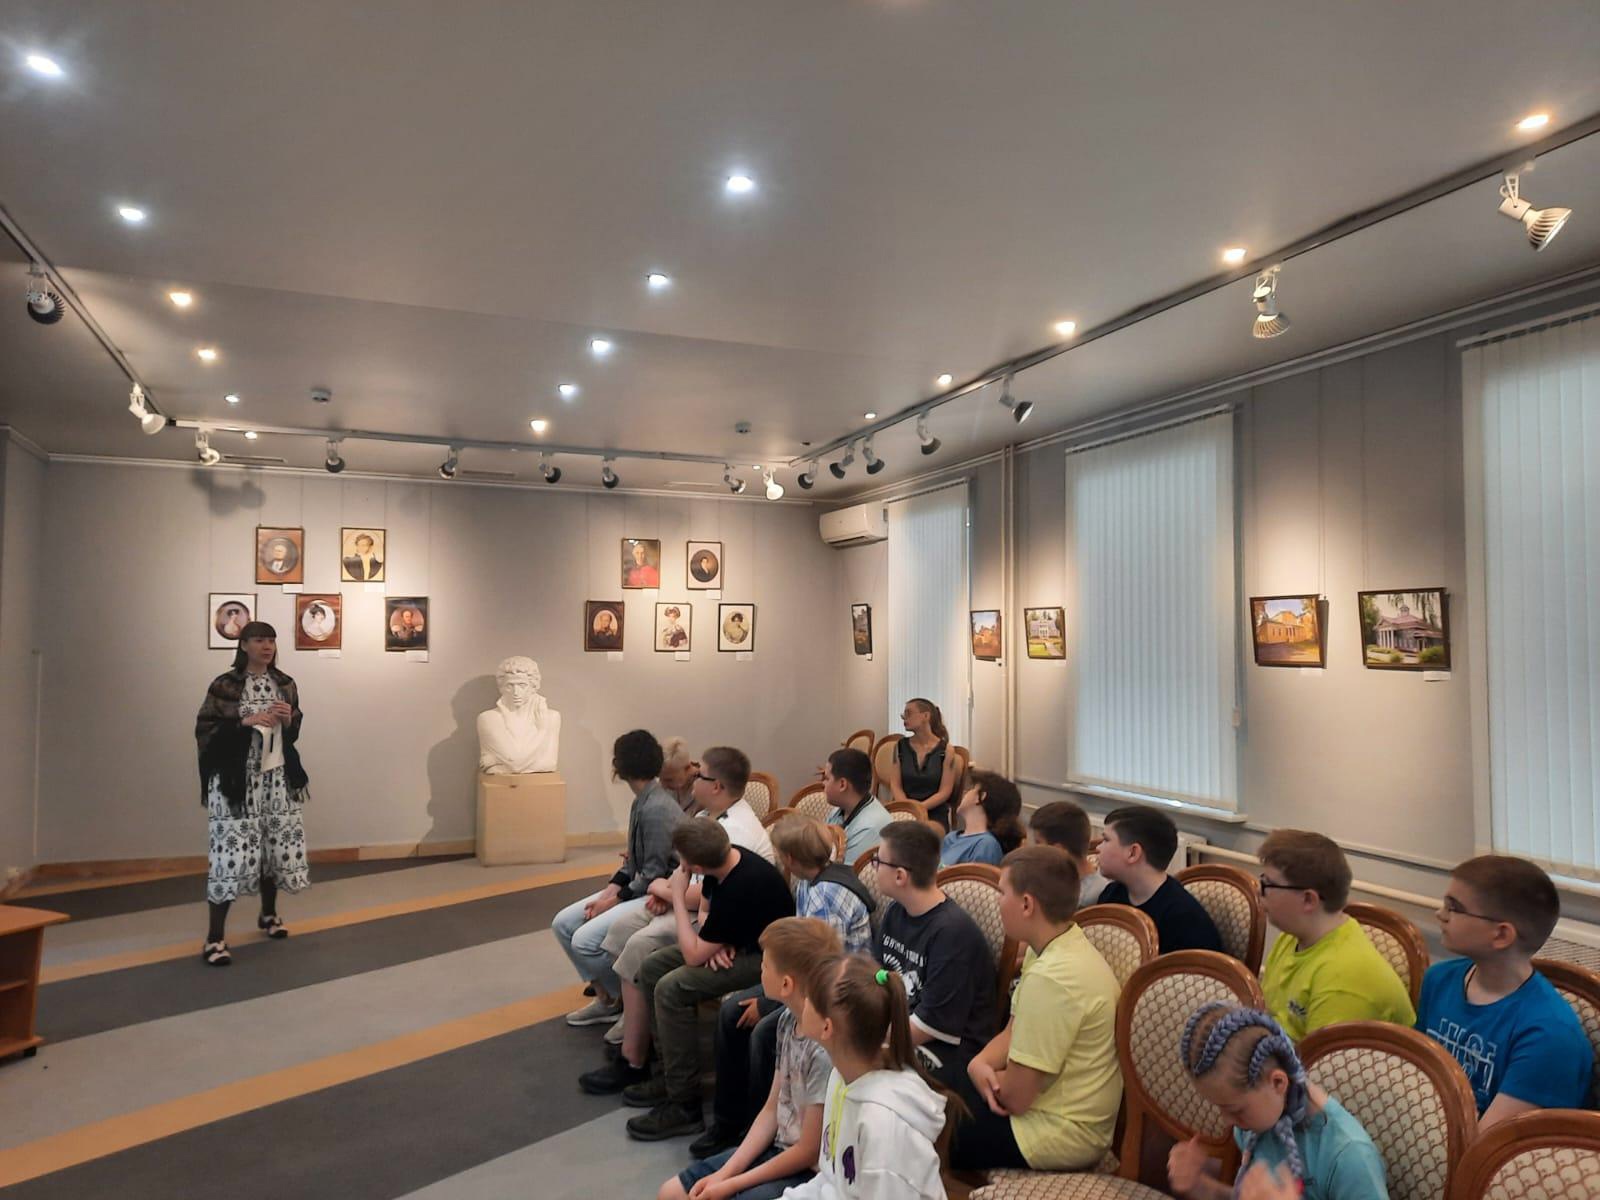 Экскурсии по случаю юбилея А. С. Пушкина проводятся в Подольском краеведческом музее 